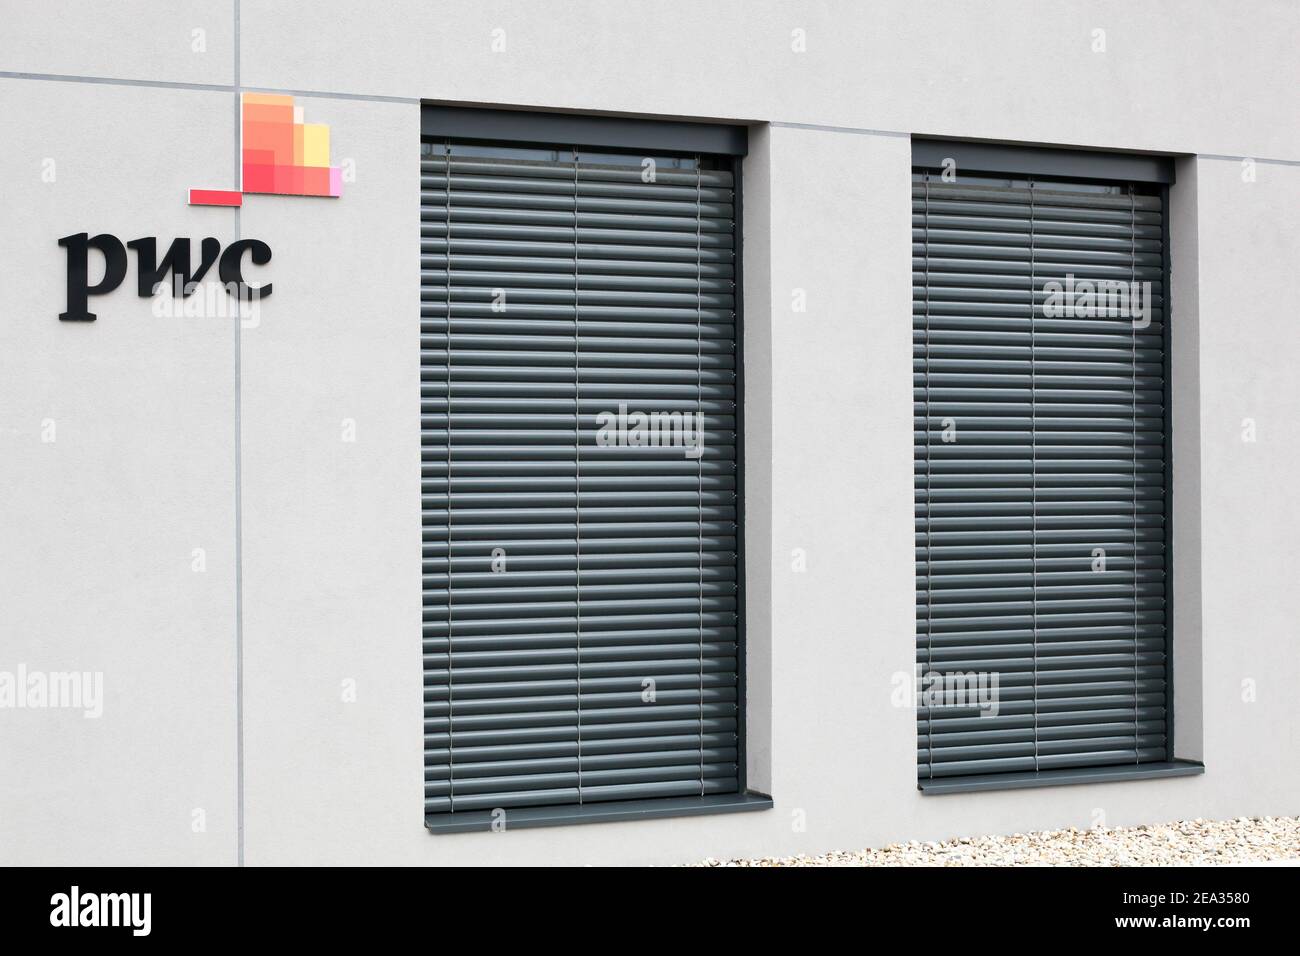 Bourg, France - 26 septembre 2020 : immeuble de bureaux PWC. PricewaterhouseCoopers est un réseau de services professionnels multinational. Banque D'Images